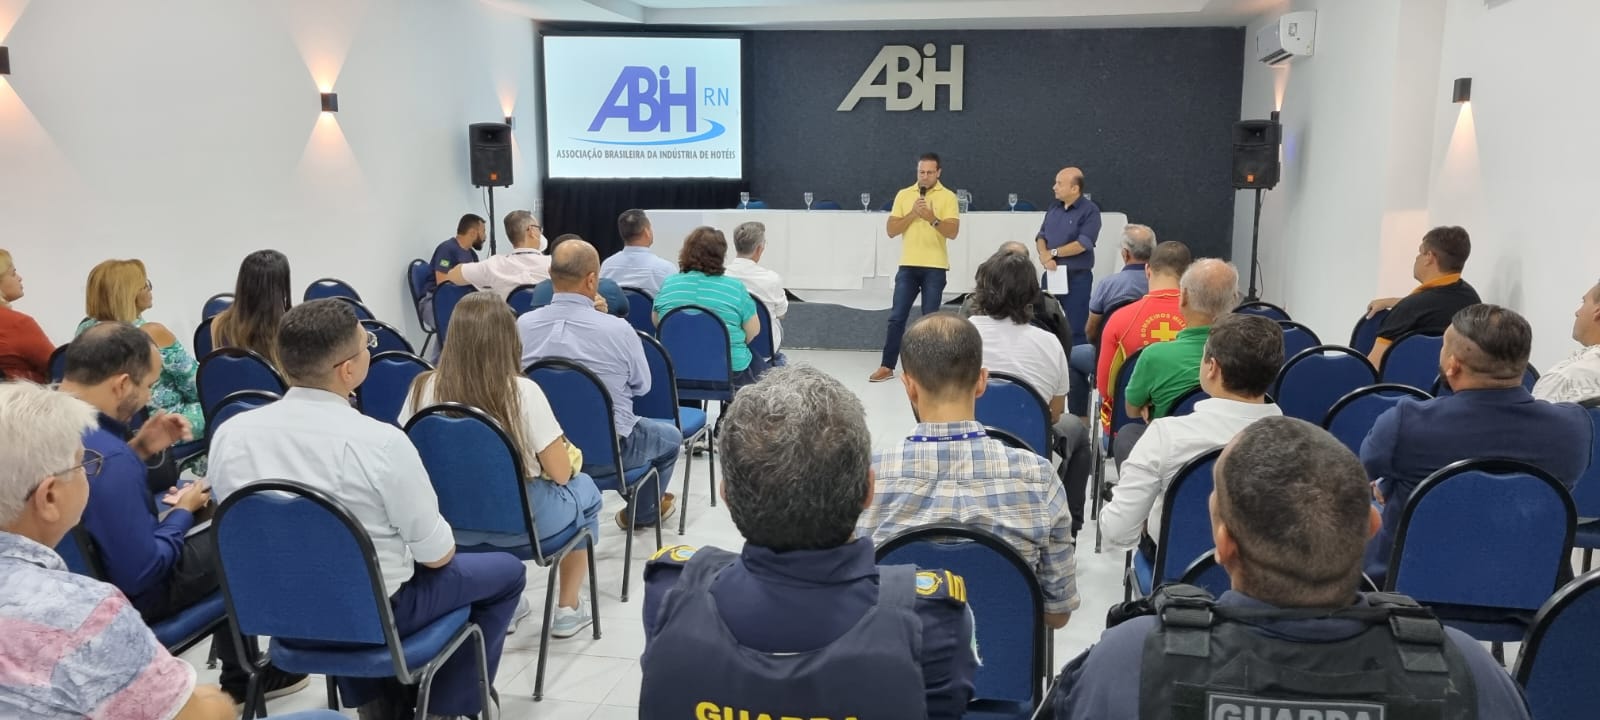 ABIH-RN se reúne com poder público para discutir situação da praia de Ponta Negra